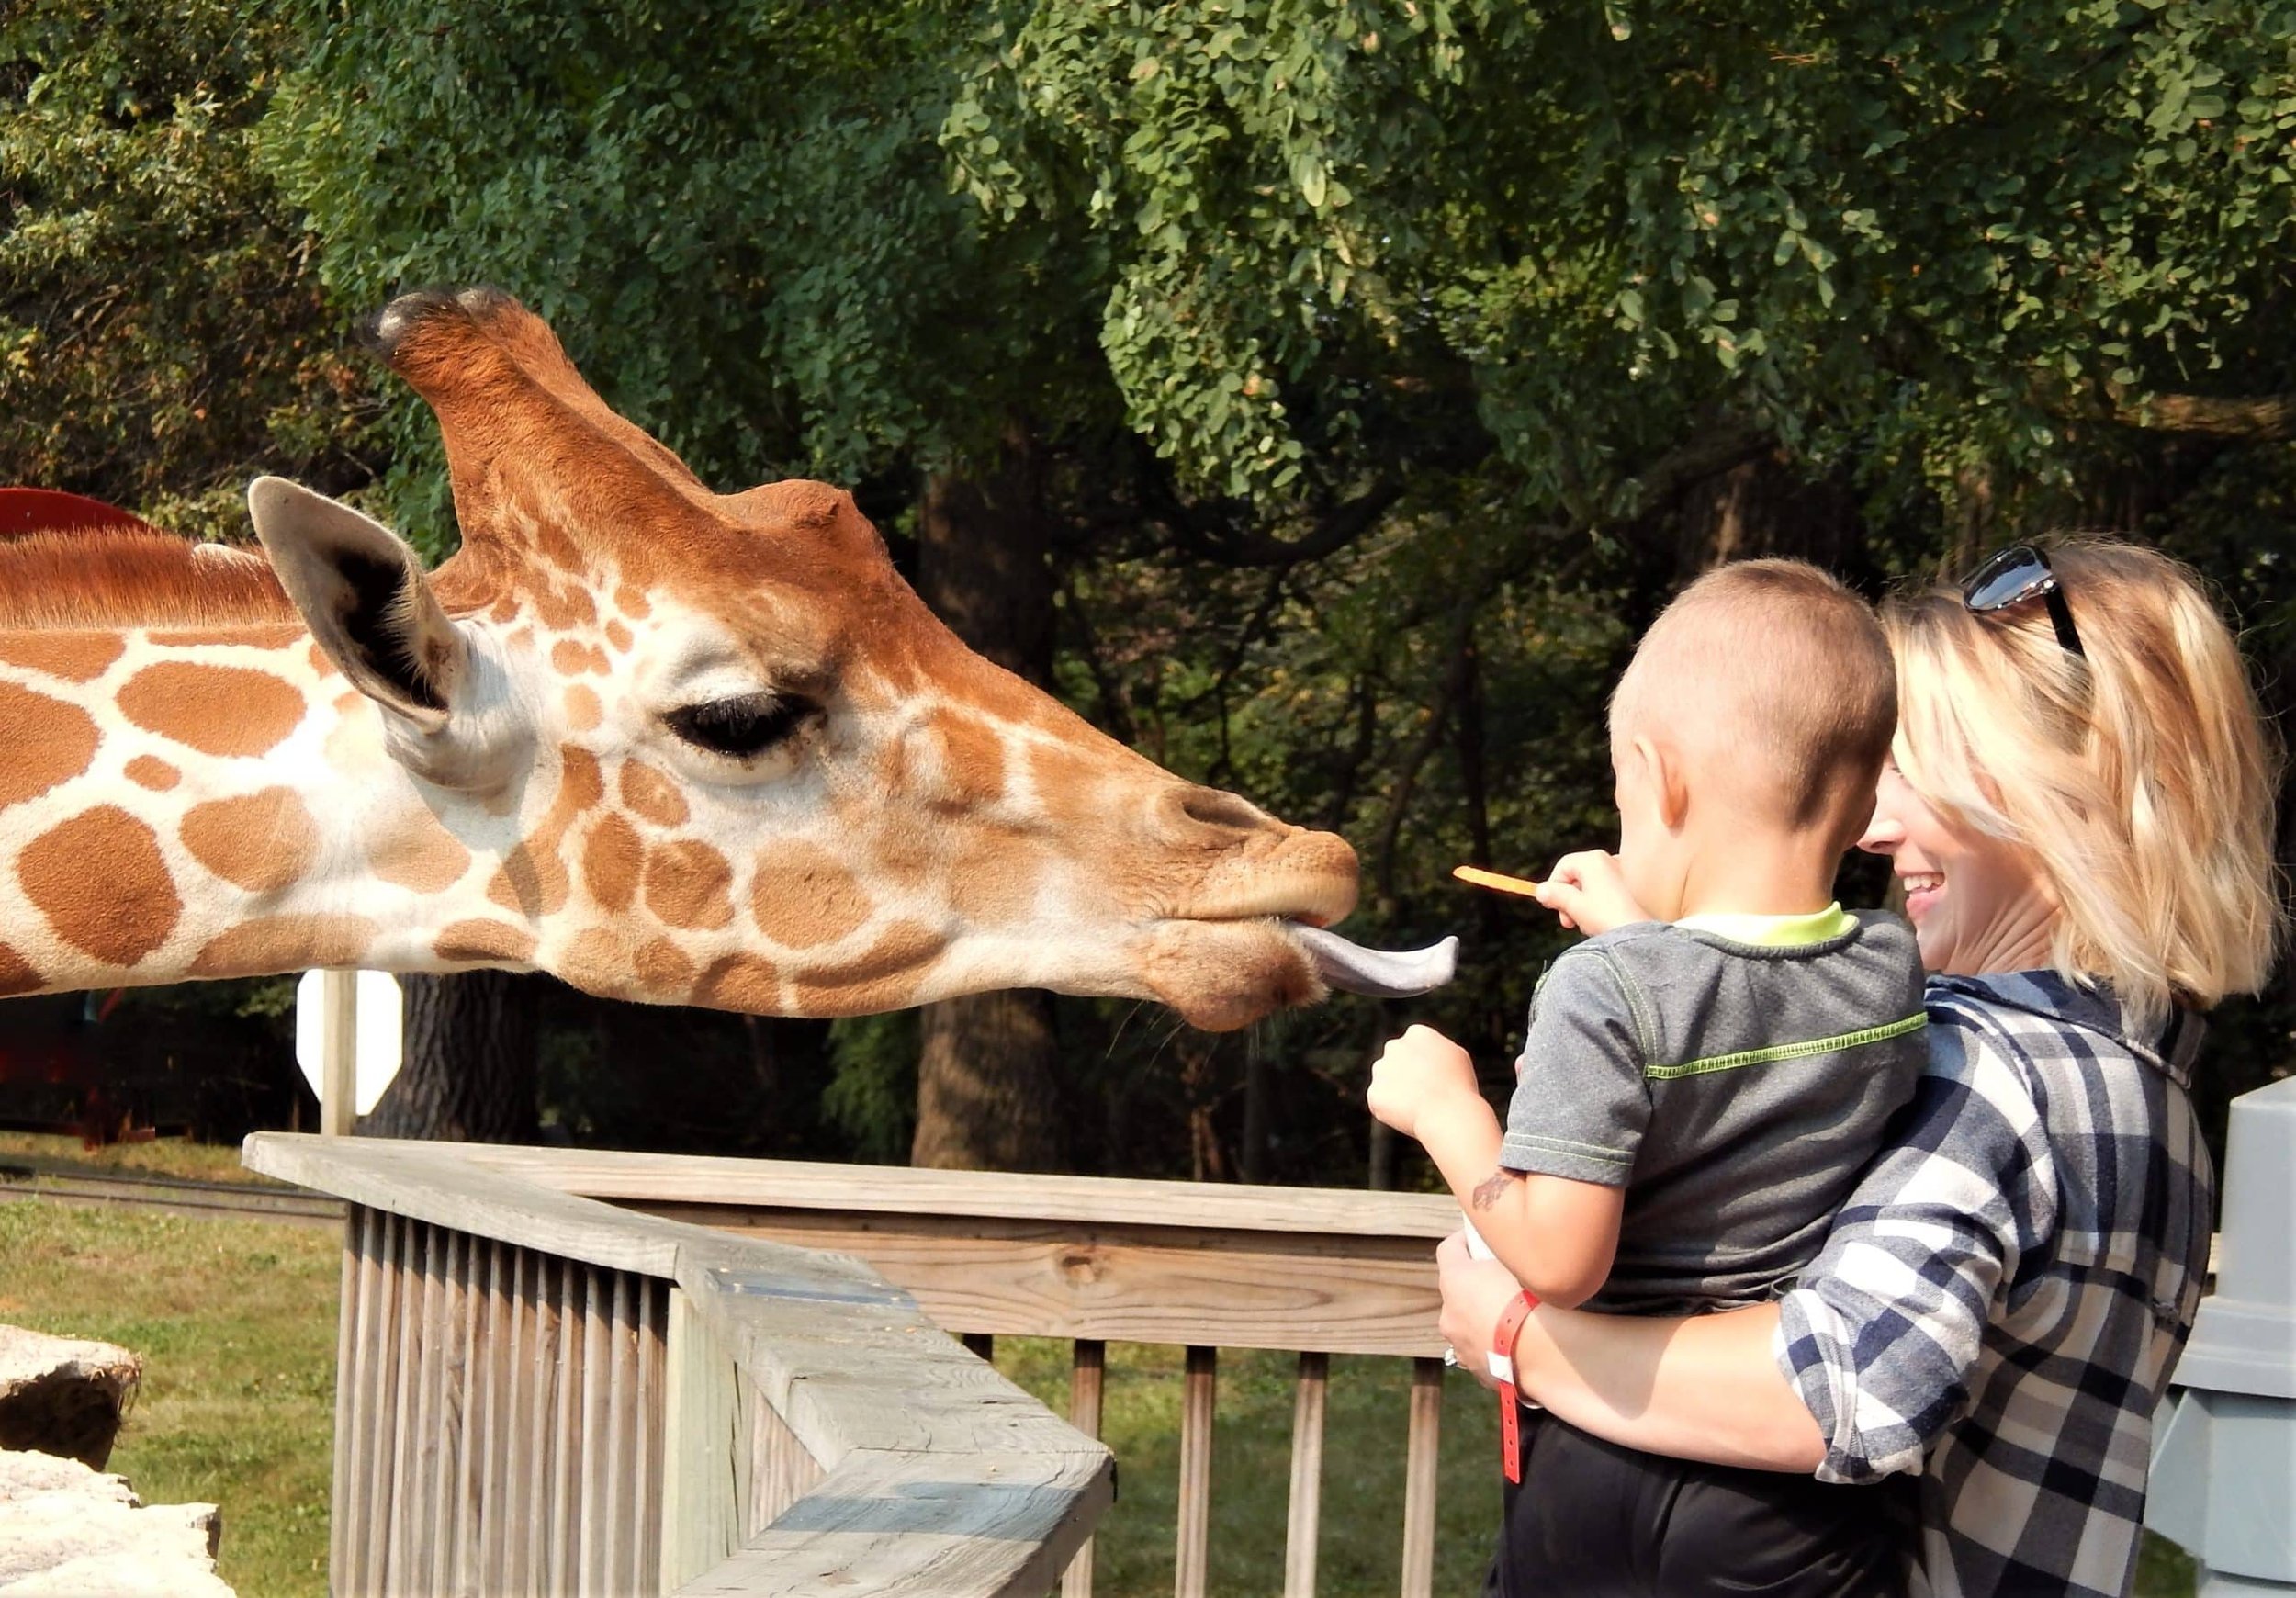 giraffe-eating-scaled.jpg